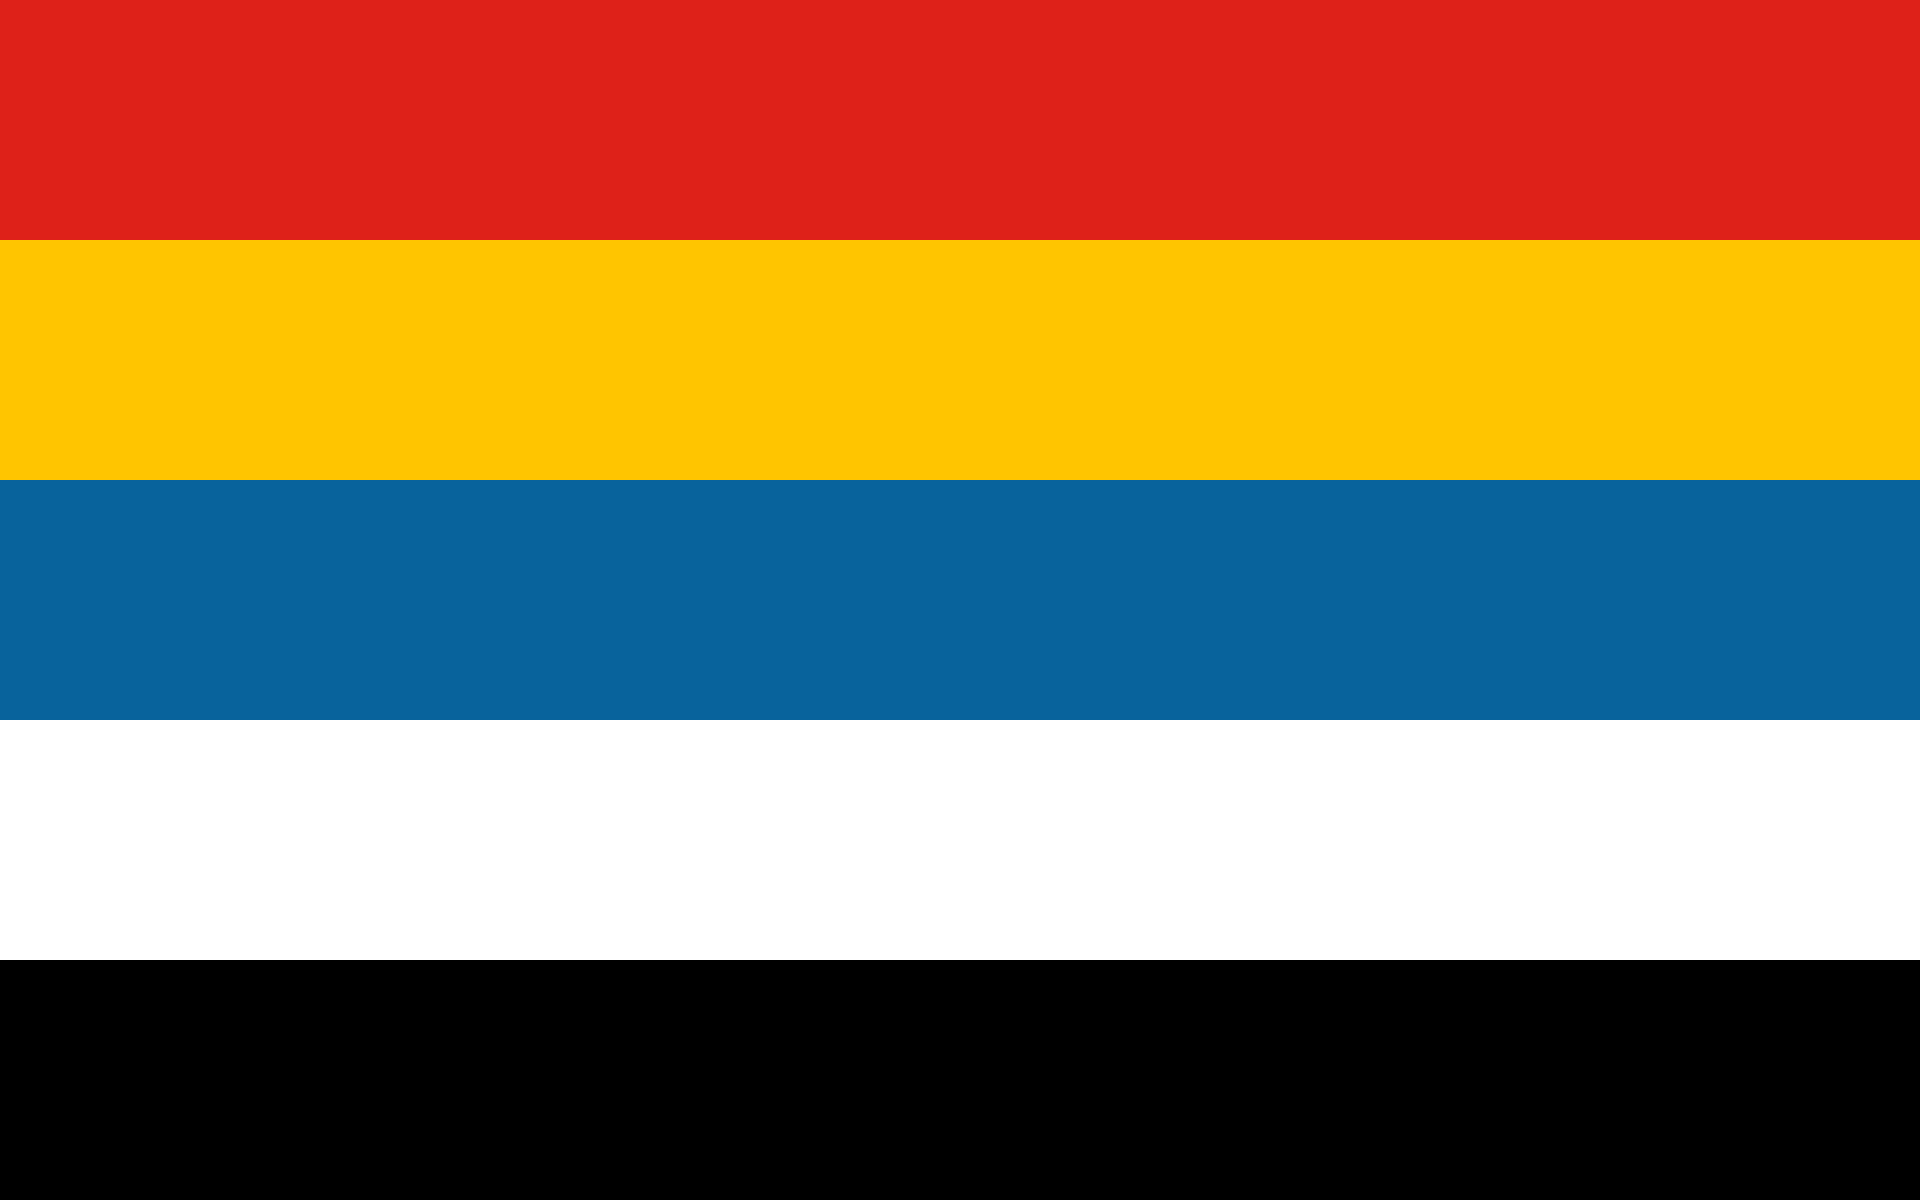 中華民國國旗五色旗(1912—1928)